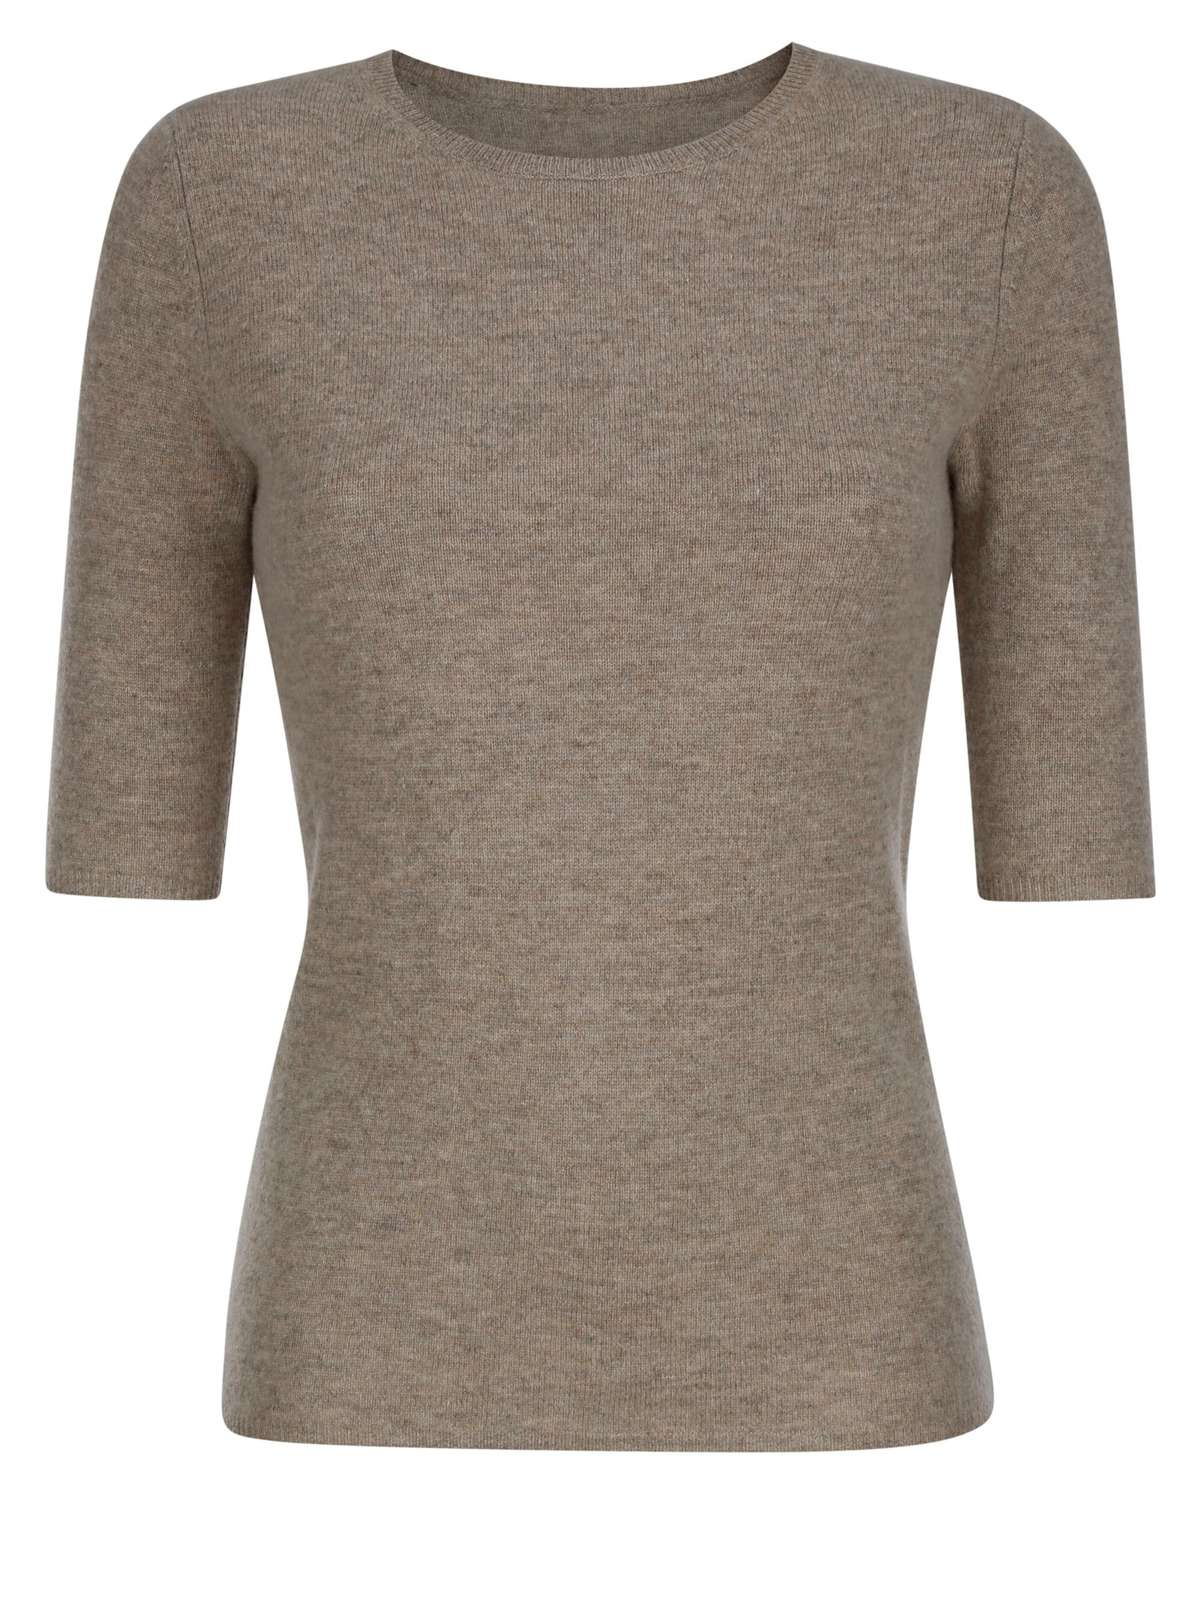 Вязаный пуловер трикотажной рубашки из высококачественной смесовой кашемировой смеси.